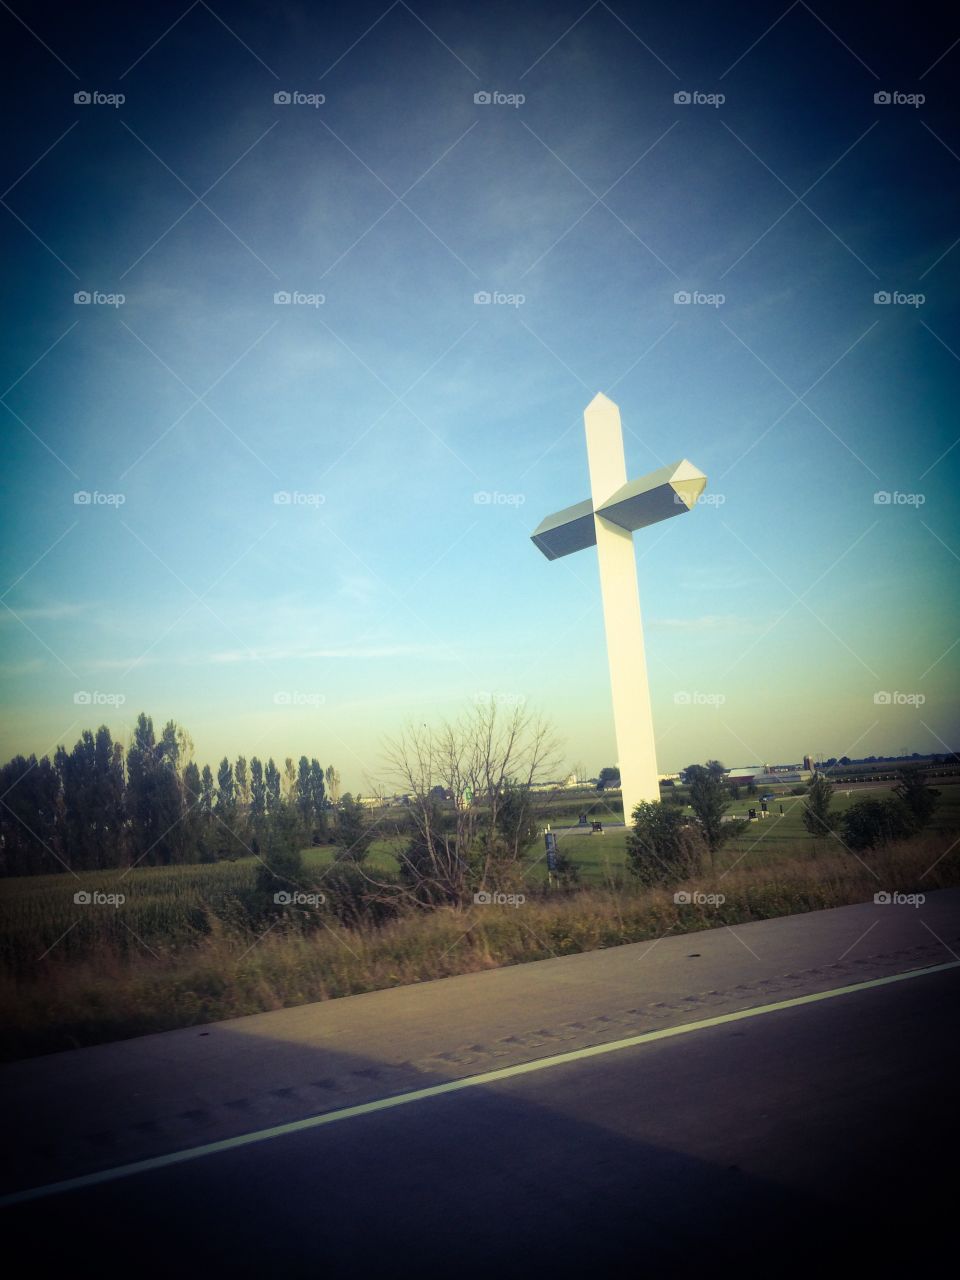 Roadside cross. Seen along the interstate 